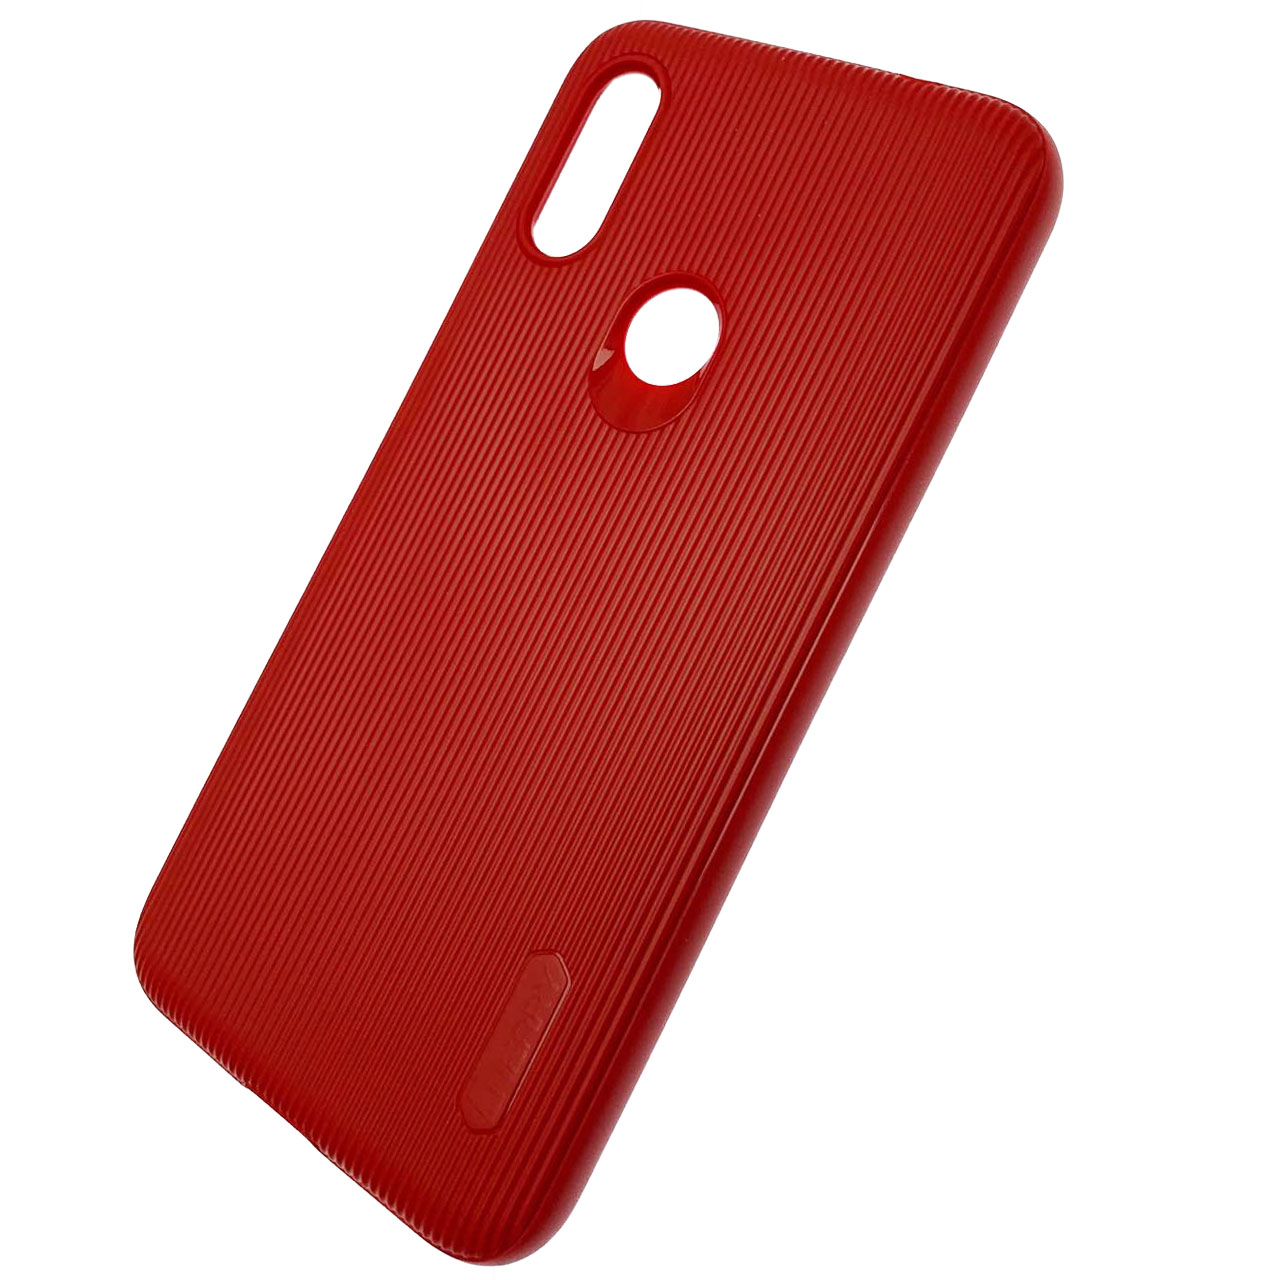 Чехол накладка Cherry для XIAOMI Redmi 7, силикон, полоски, цвет темно красный.